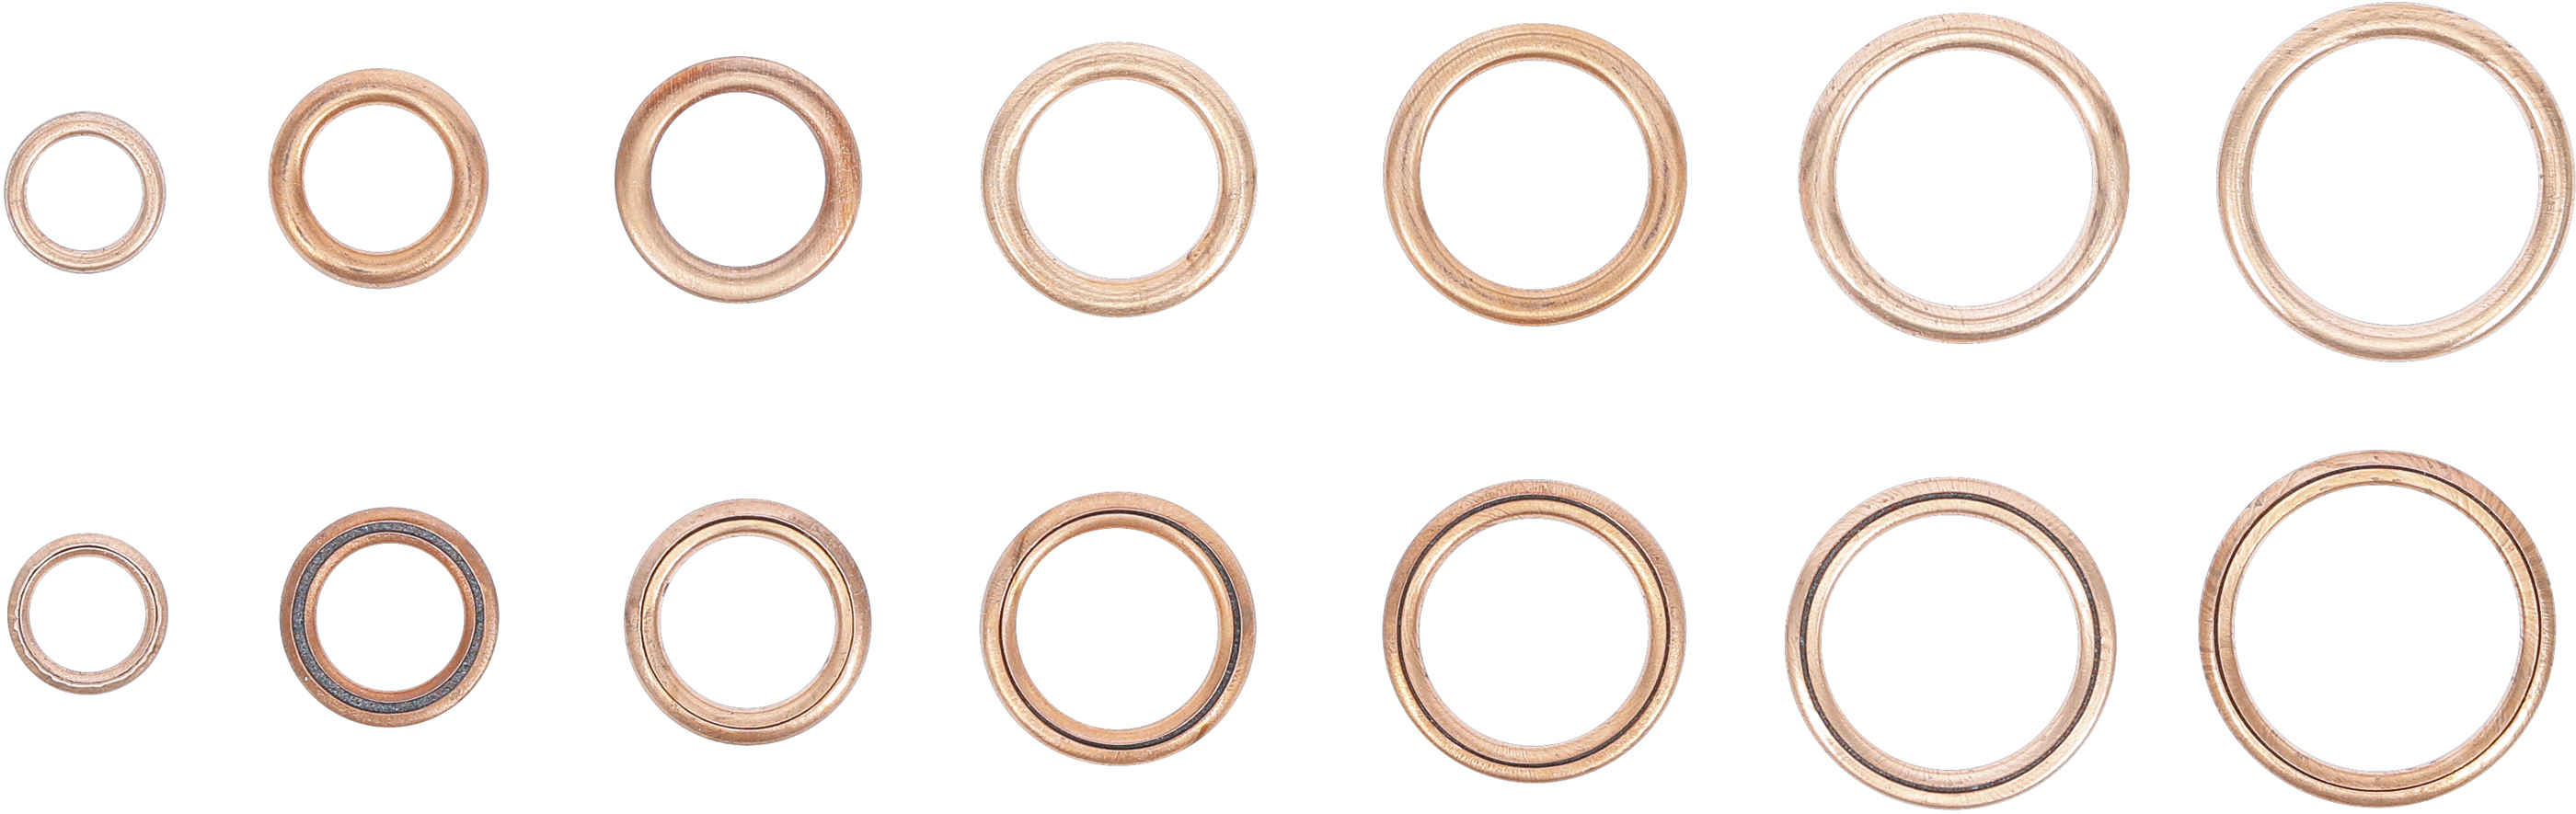 BGS O-Ring-Sortiment | Kupfer | Ø 6 - 20 mm | 95-tlg.